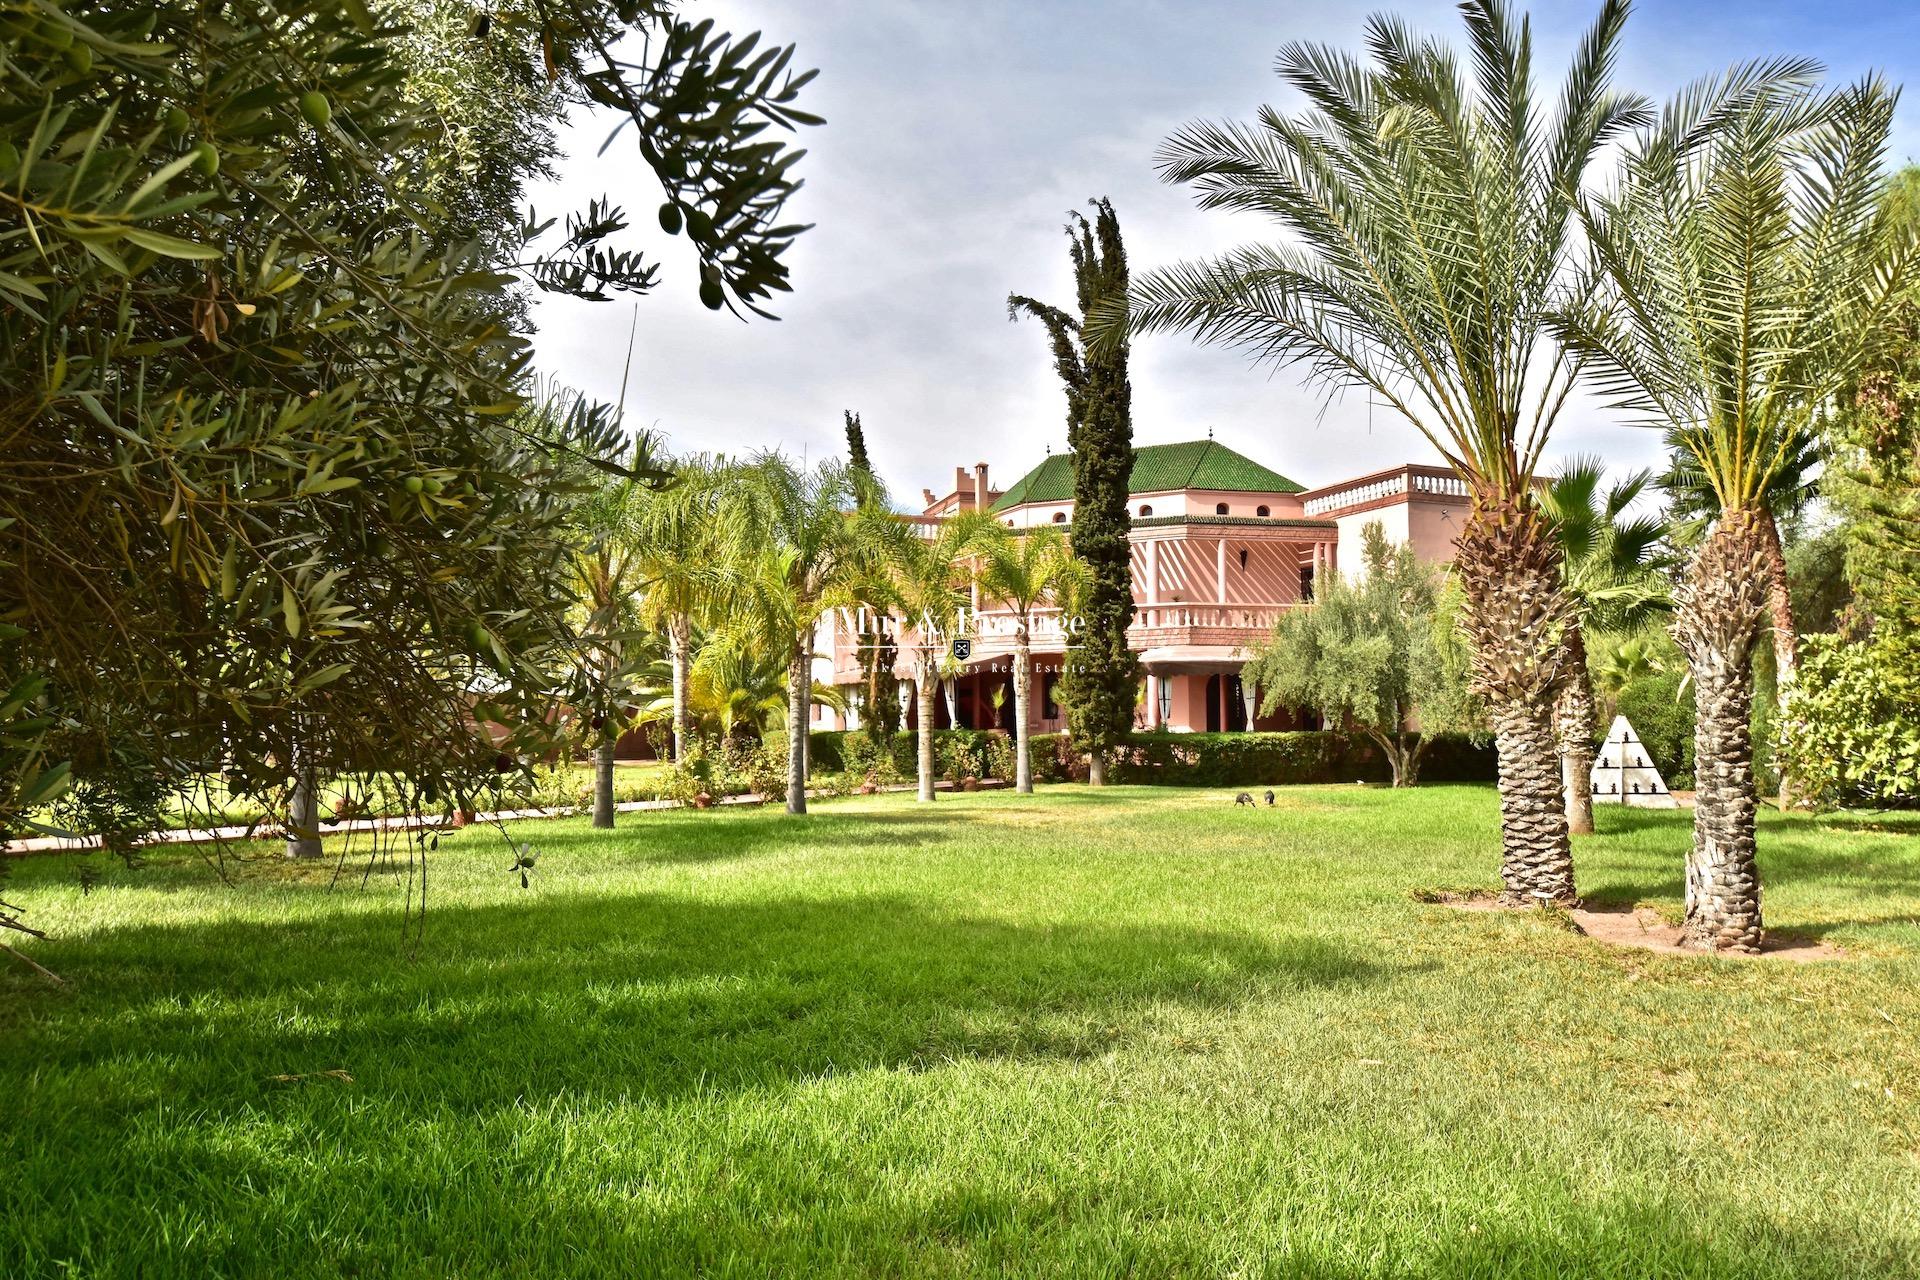 Maison au charme Marocain à vendre à proximité de l’école Américaine